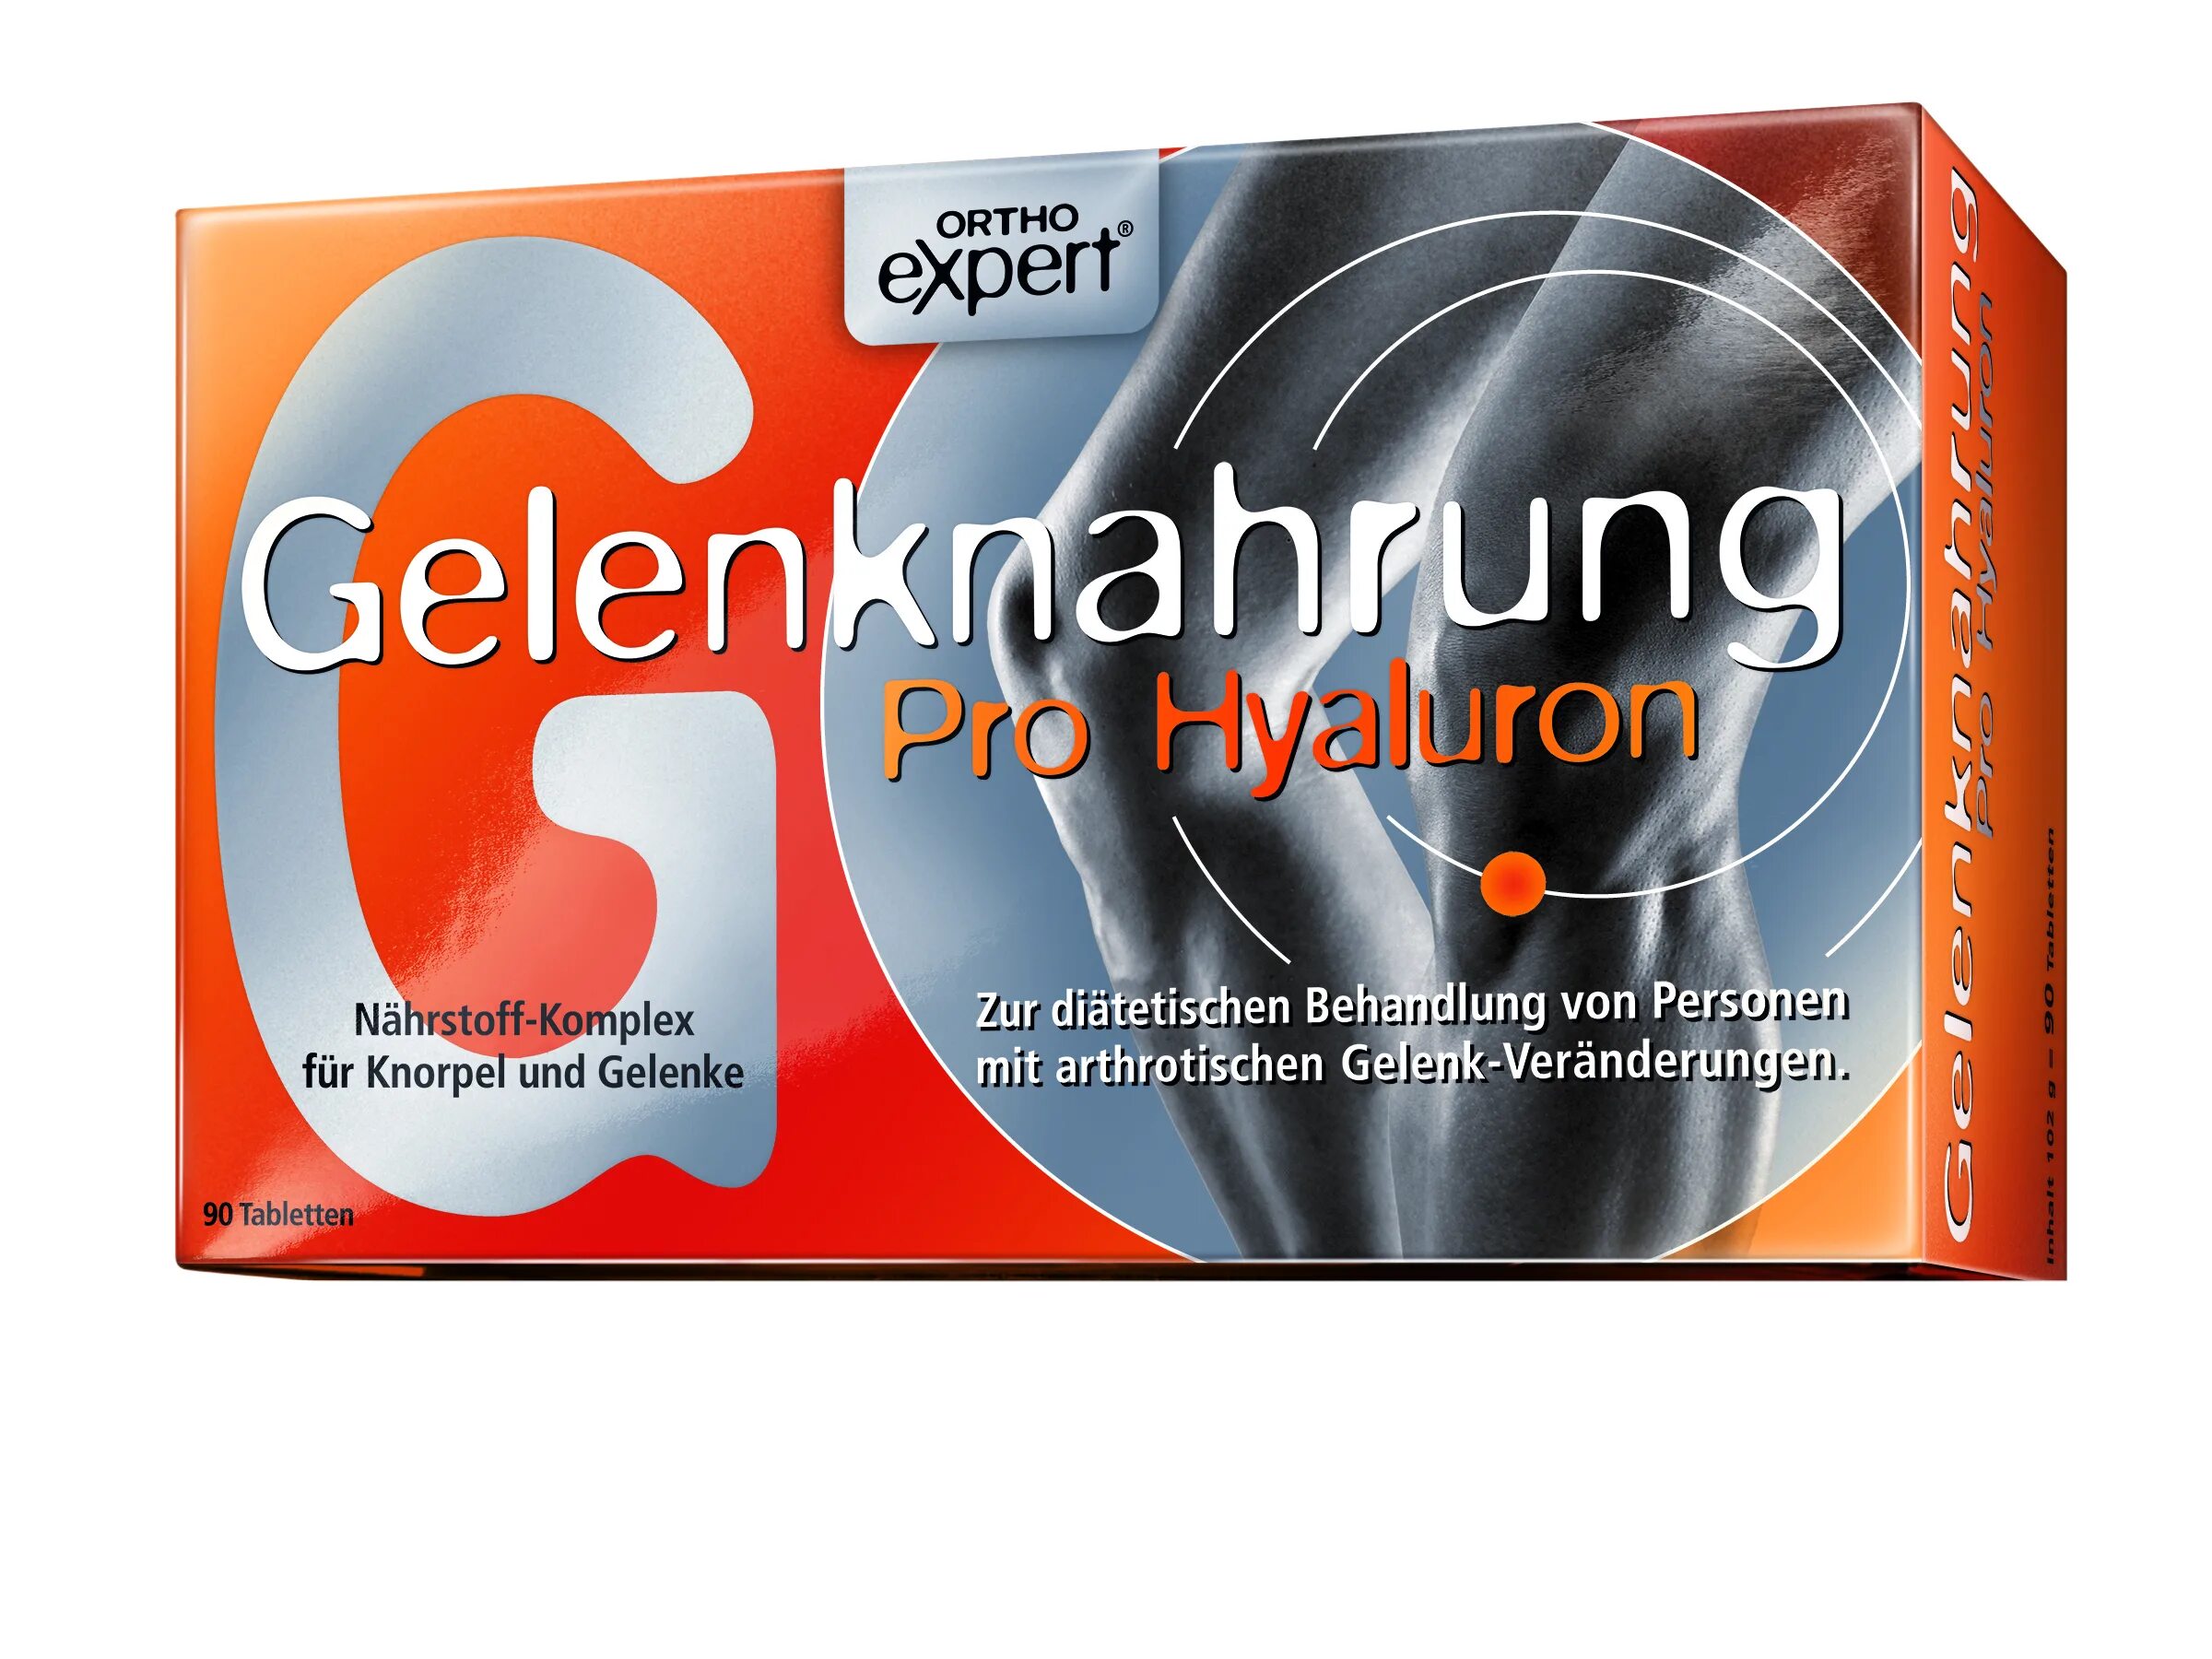 Gelenk nahrung. Геленк нарунг (Gelenknahrung) Pro Hyaluron Orthoexpert Tabletten 90 St. Коллаген Геленк нарунг. Gelenk Nahrung таблетки. Немецкое лекарство для суставов.